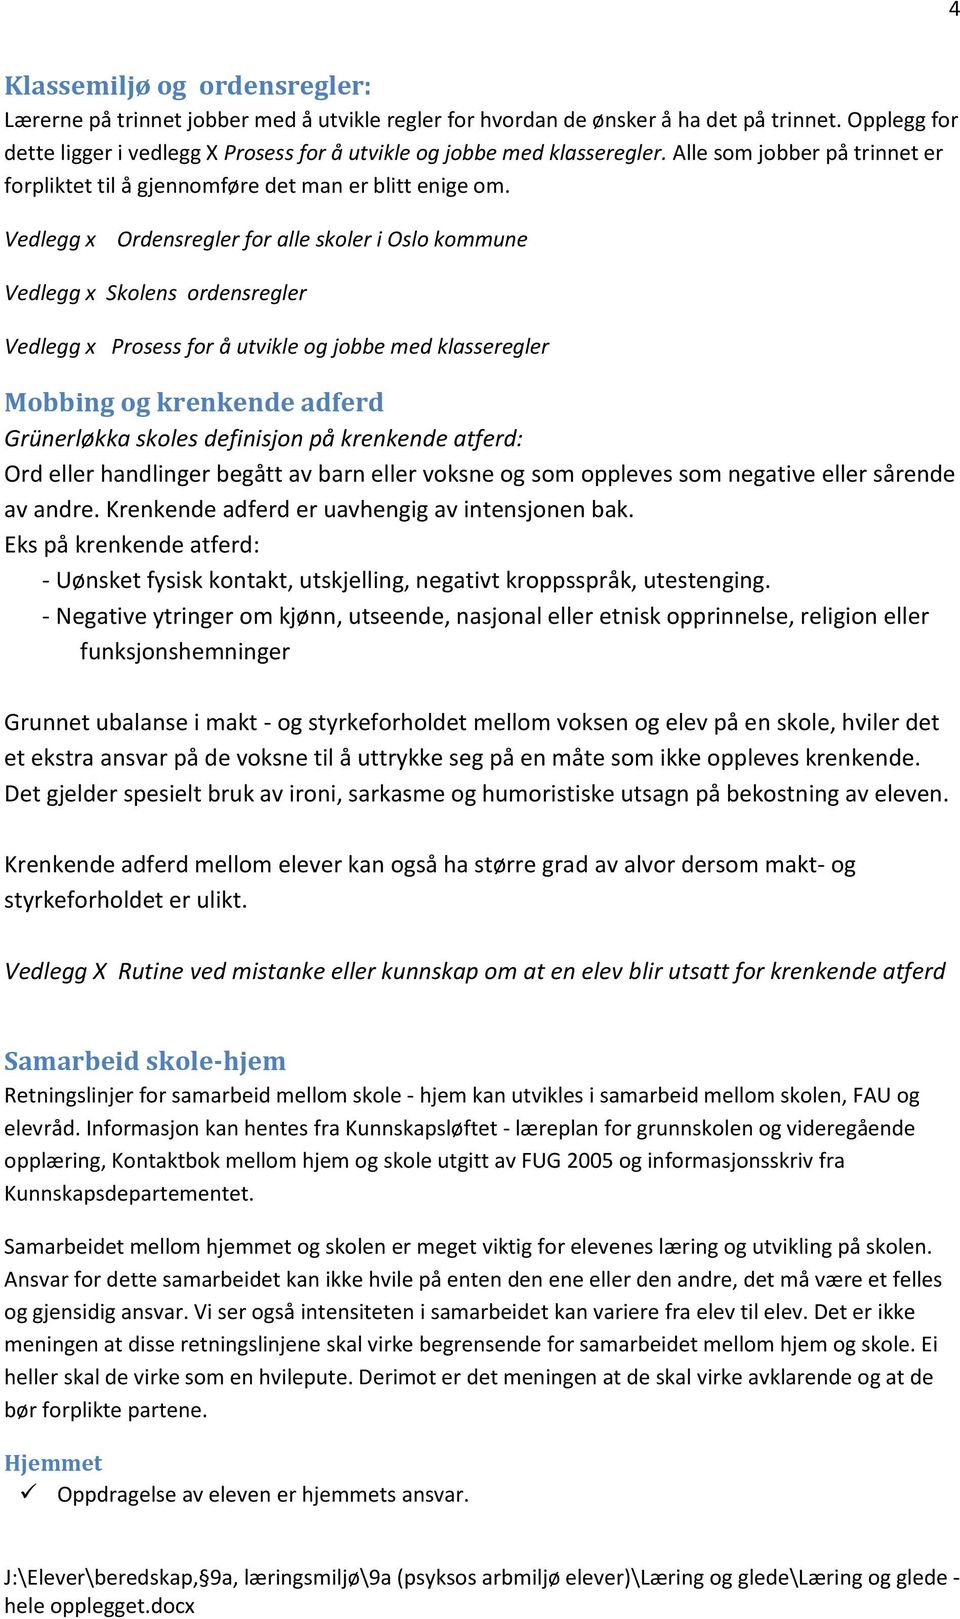 Vedlegg x Ordensregler for alle skoler i Oslo kommune Vedlegg x Skolens ordensregler Vedlegg x Prosess for å utvikle og jobbe med klasseregler Mobbing og krenkende adferd Grünerløkka skoles